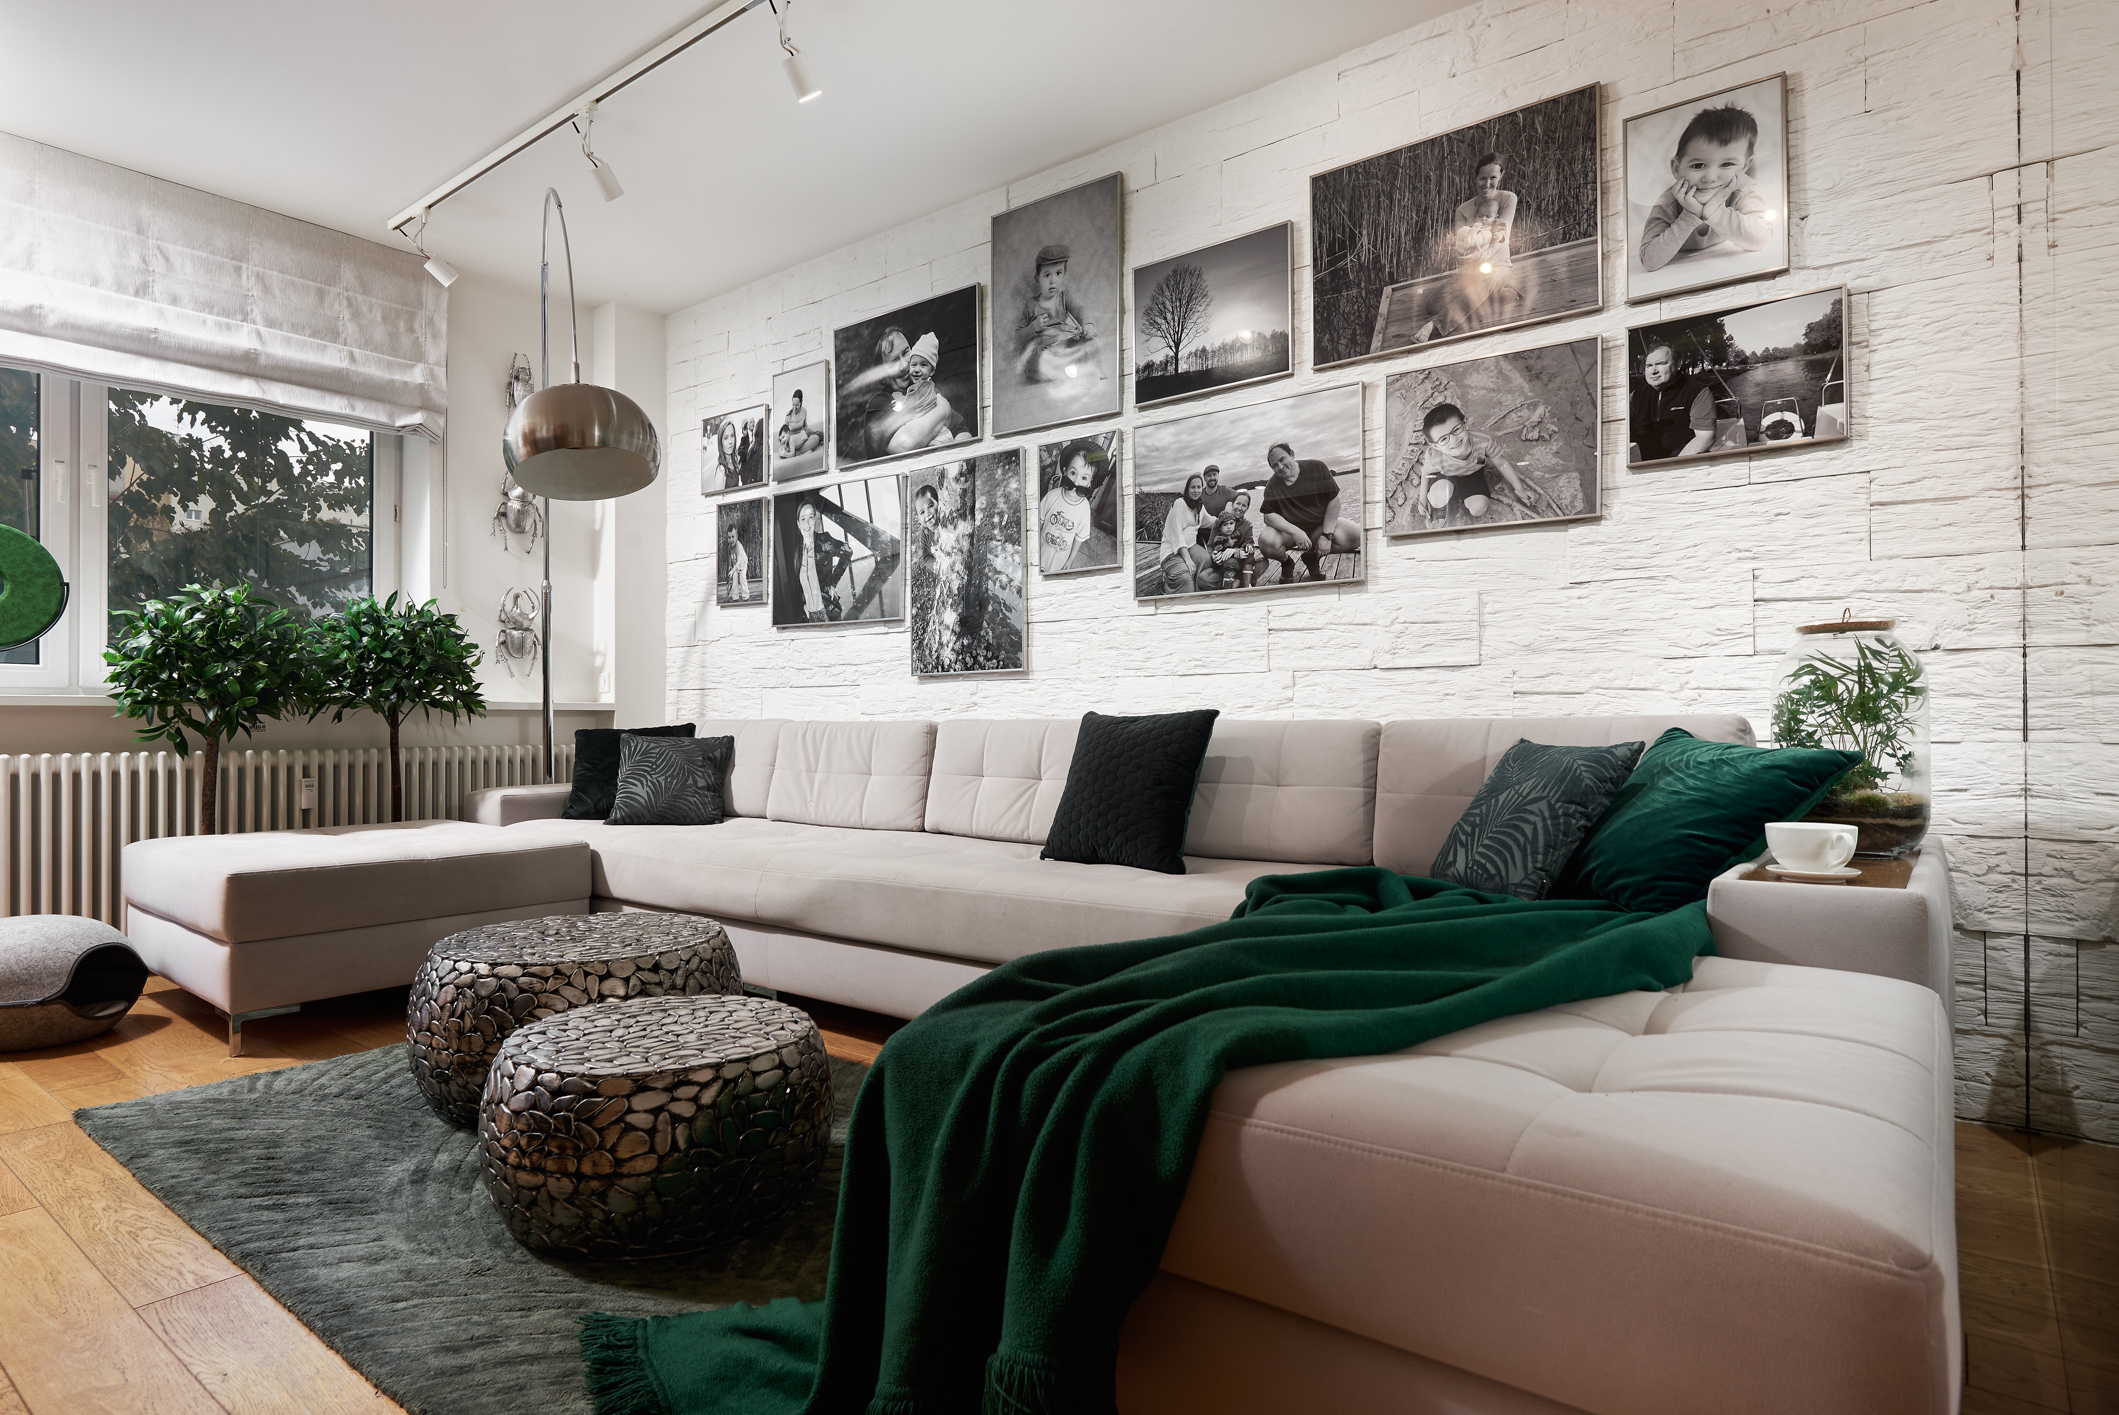 Ściana za sofą w salonie - kamienna okładzina i galeria rodzinnych zdjęć. Projekt Dariusz Grabowski, Dagar Studio. Fot. Marek Królikowski